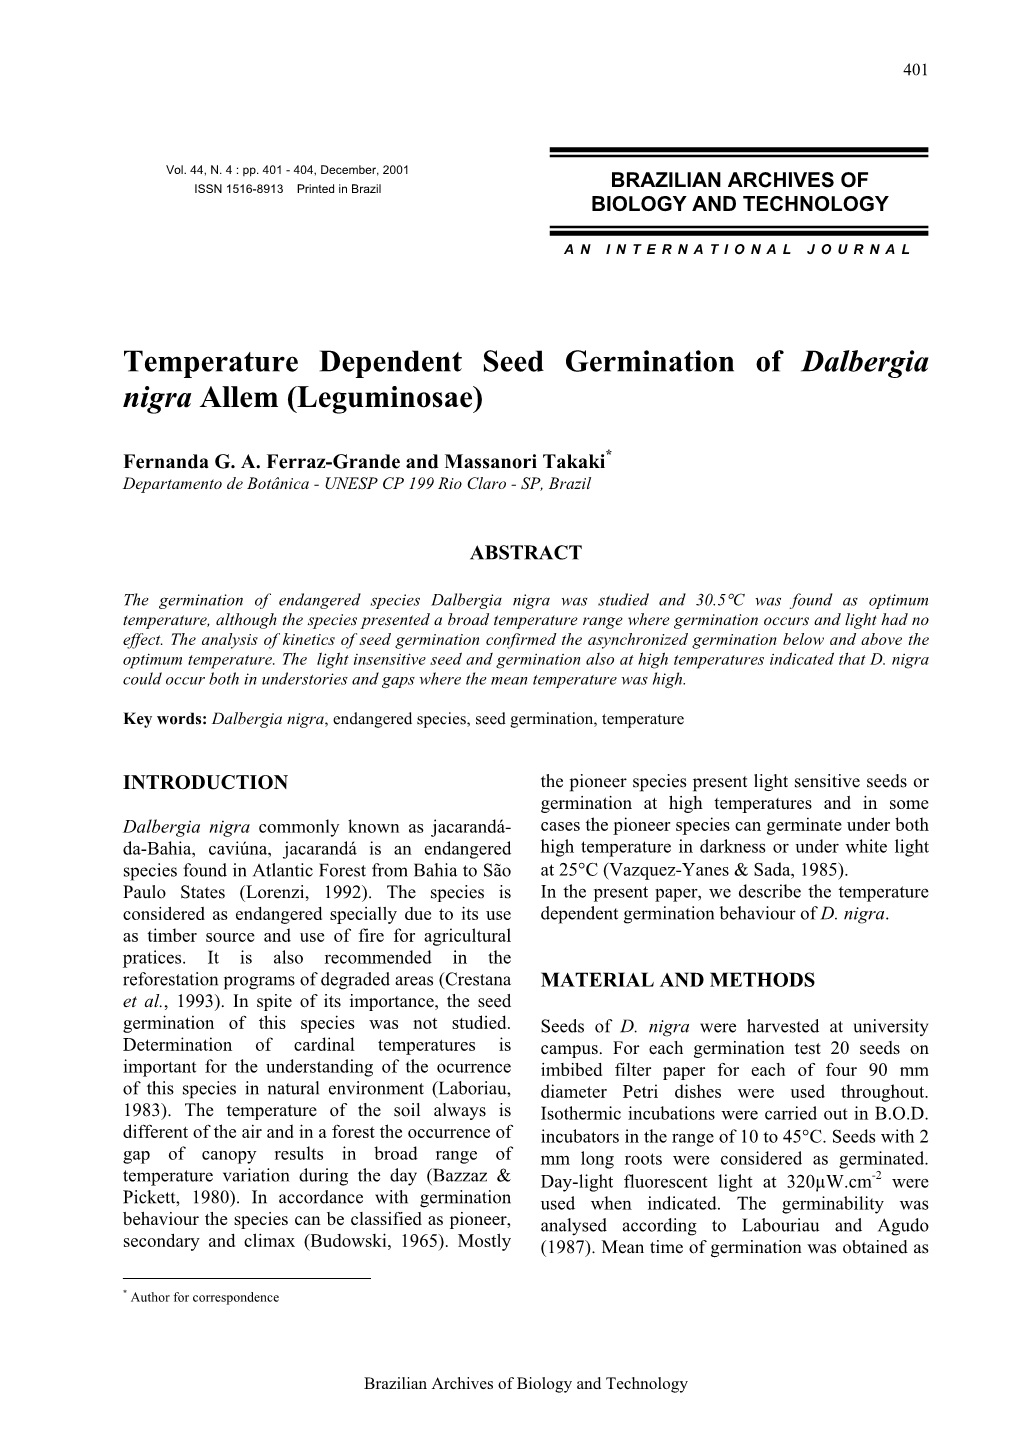 Temperature Dependent Seed Germination of Dalbergia Nigra Allem (Leguminosae)